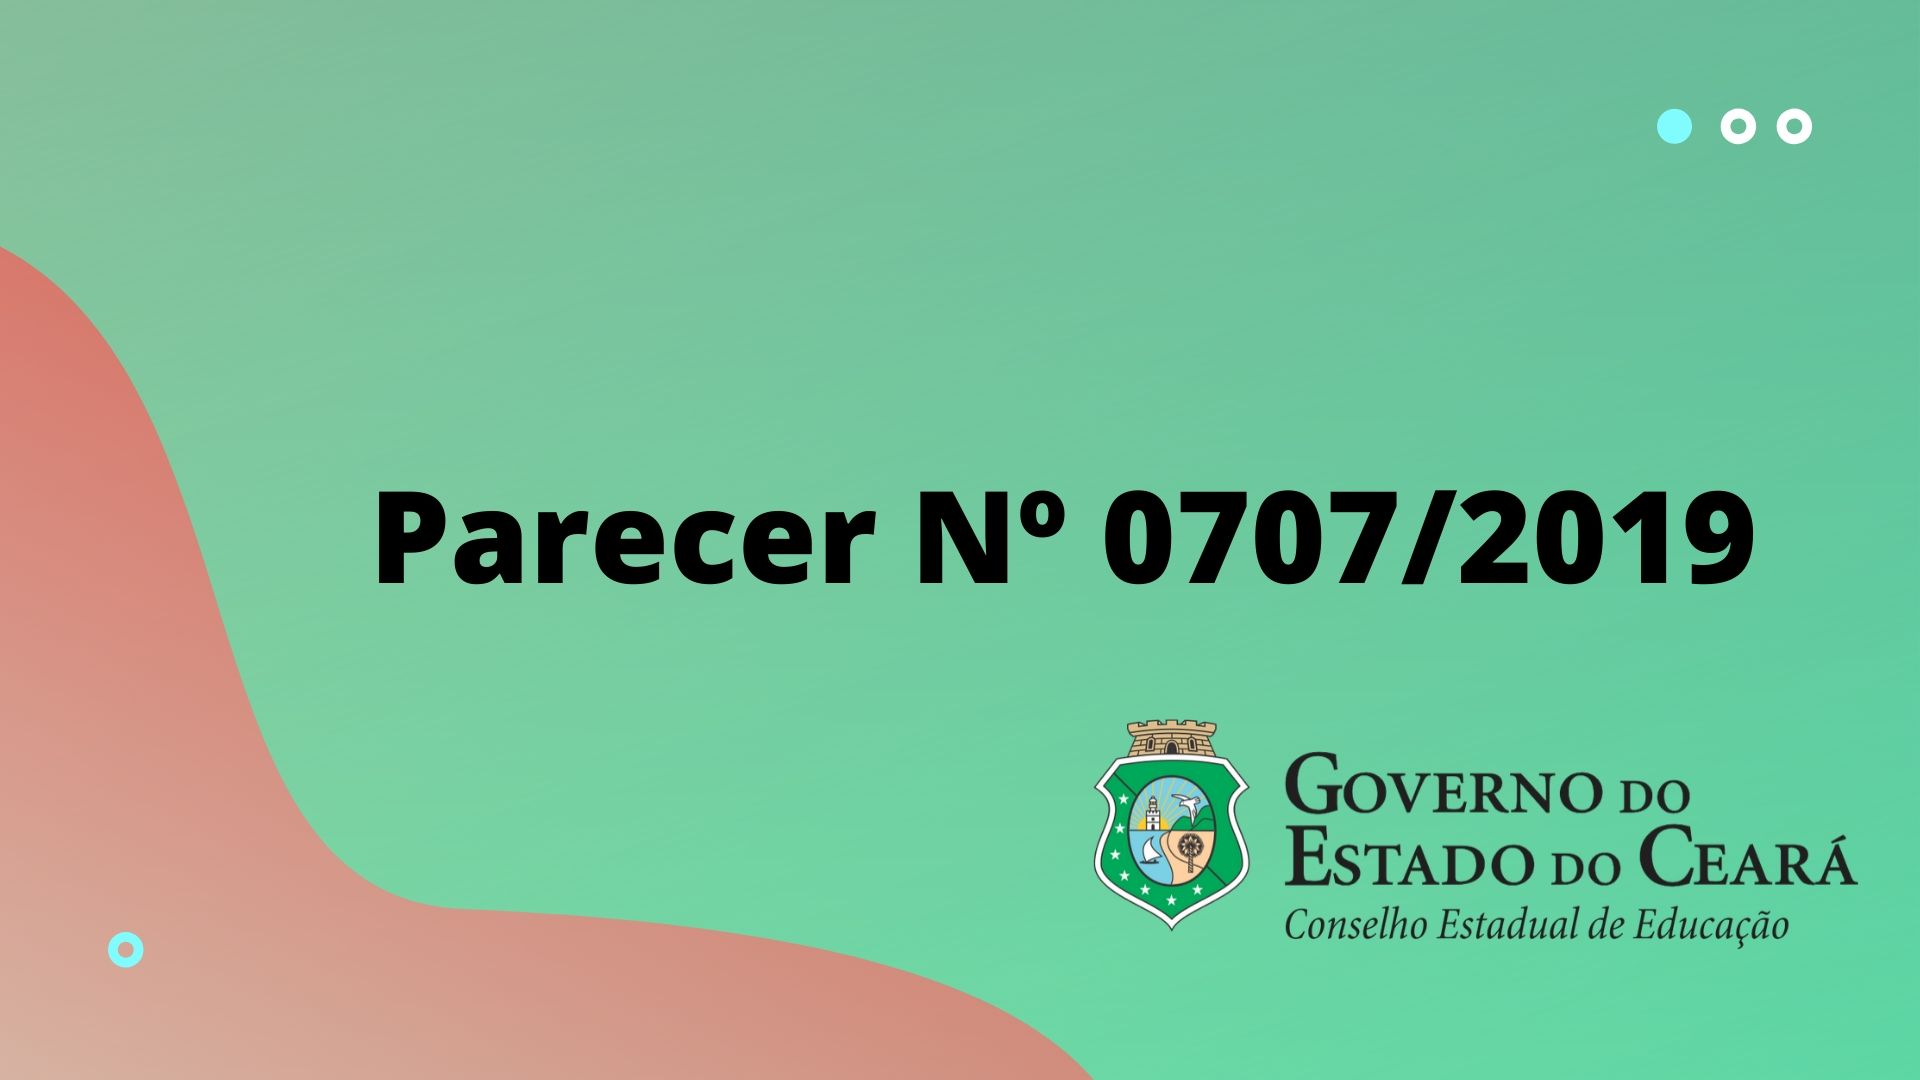 Banner Parecer Nº 707/2019 do CEE